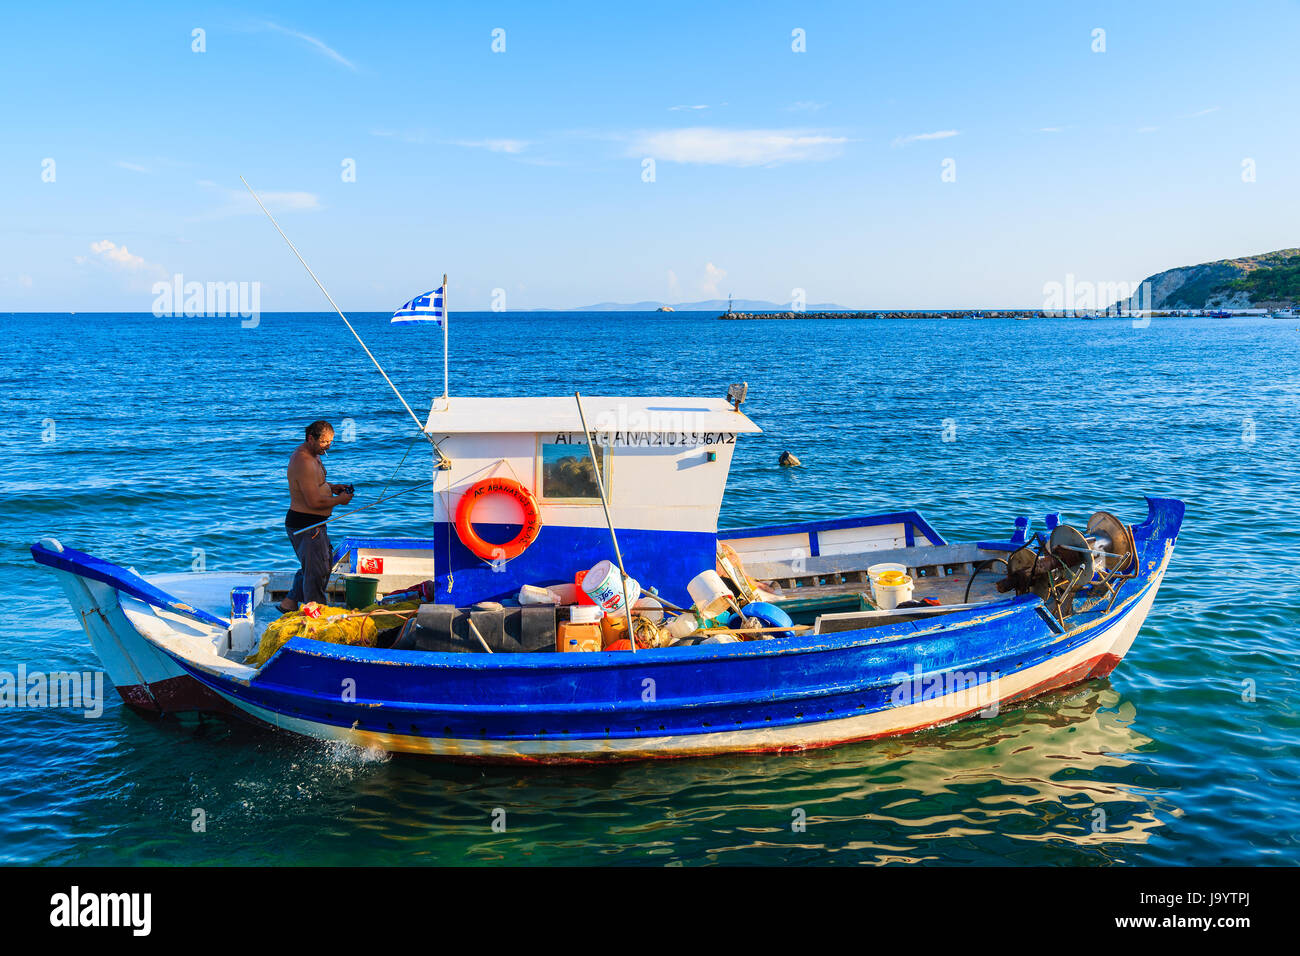 L'île de Samos, Grèce - Sep 24, 2015 : le pêcheur local dans son bateau naviguant sur la mer bleue, l'île de Samos, en Grèce. Banque D'Images